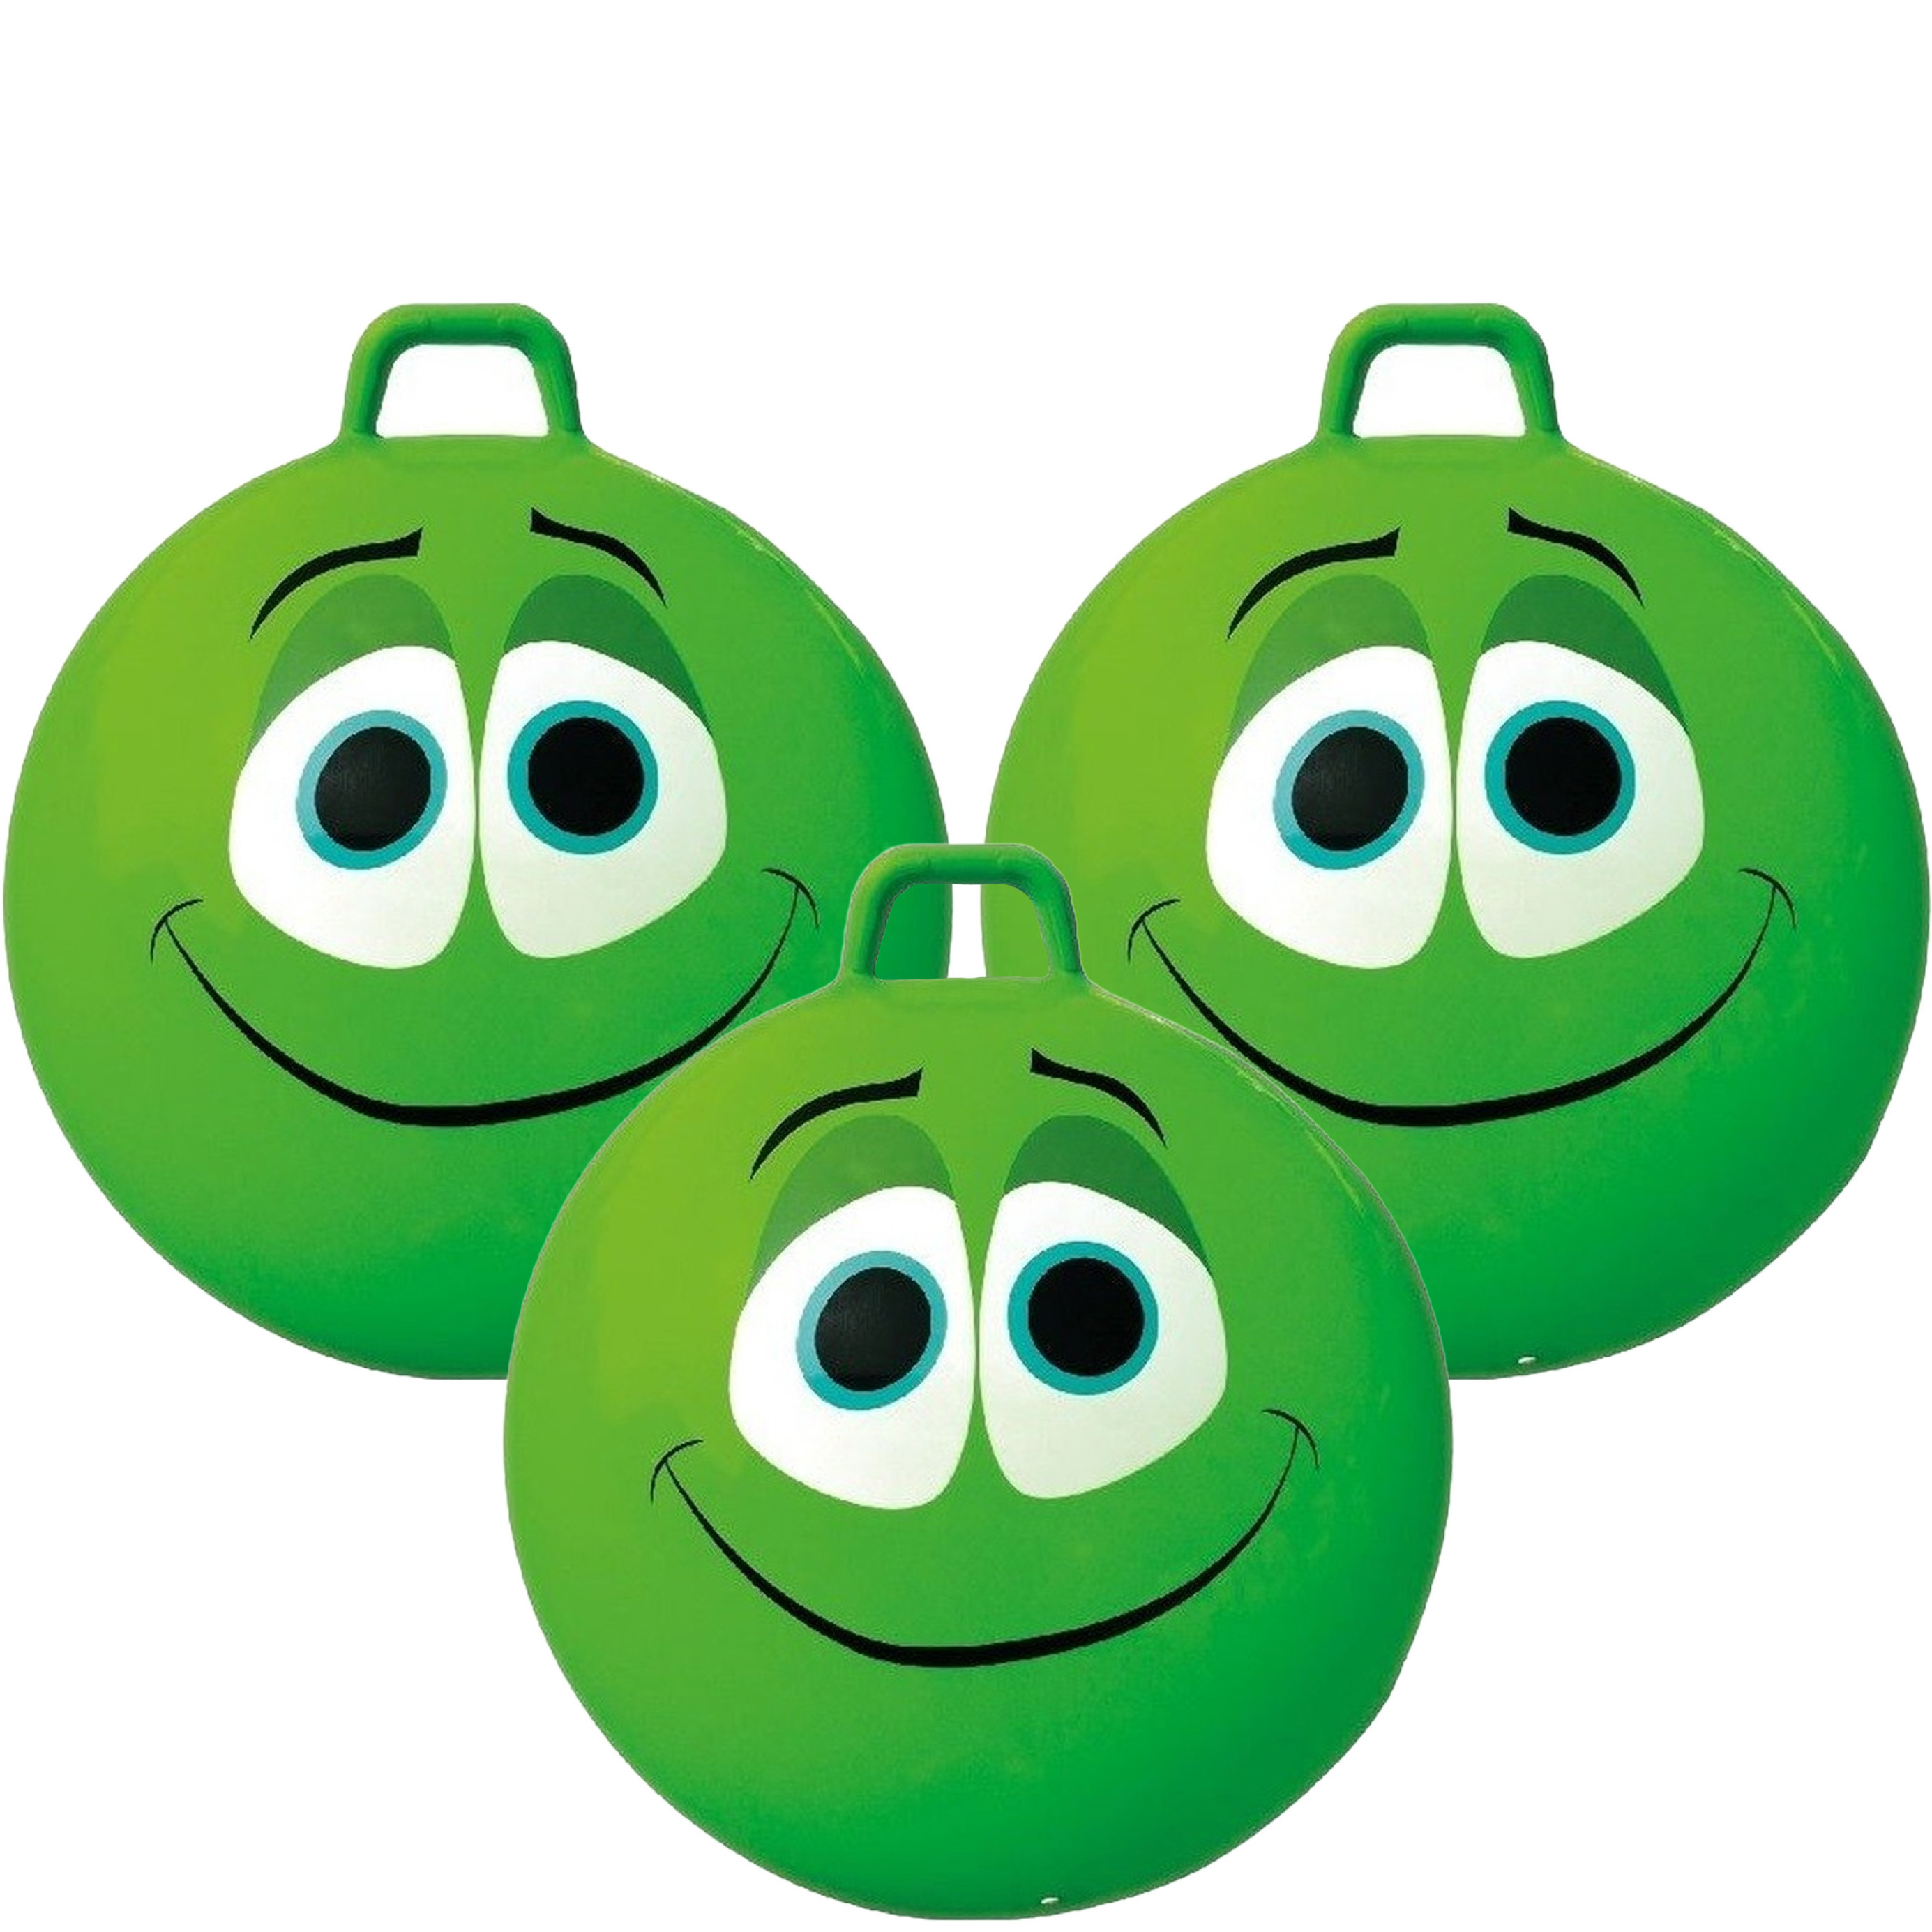 3x stuks smiley groene skippybal 65 cm